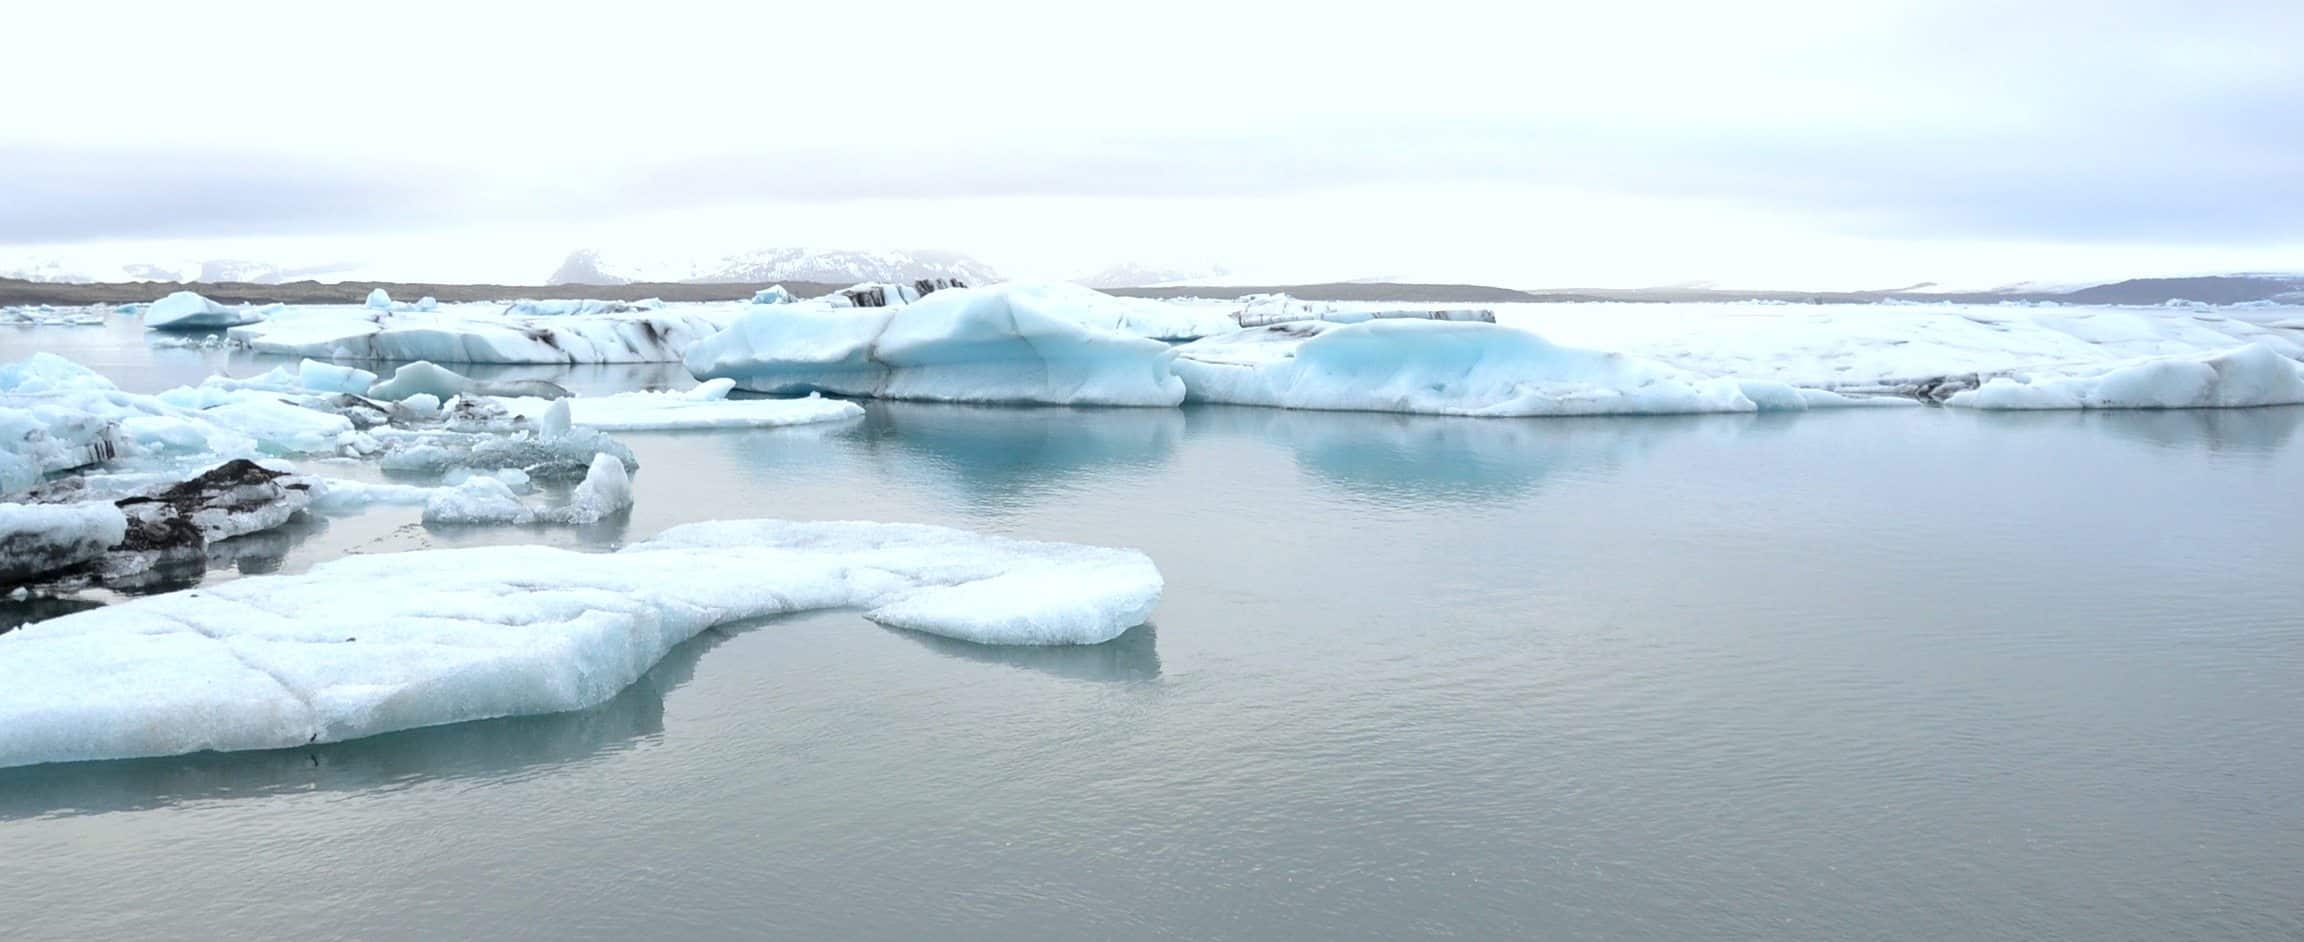 The ice lake Jökulsárlón